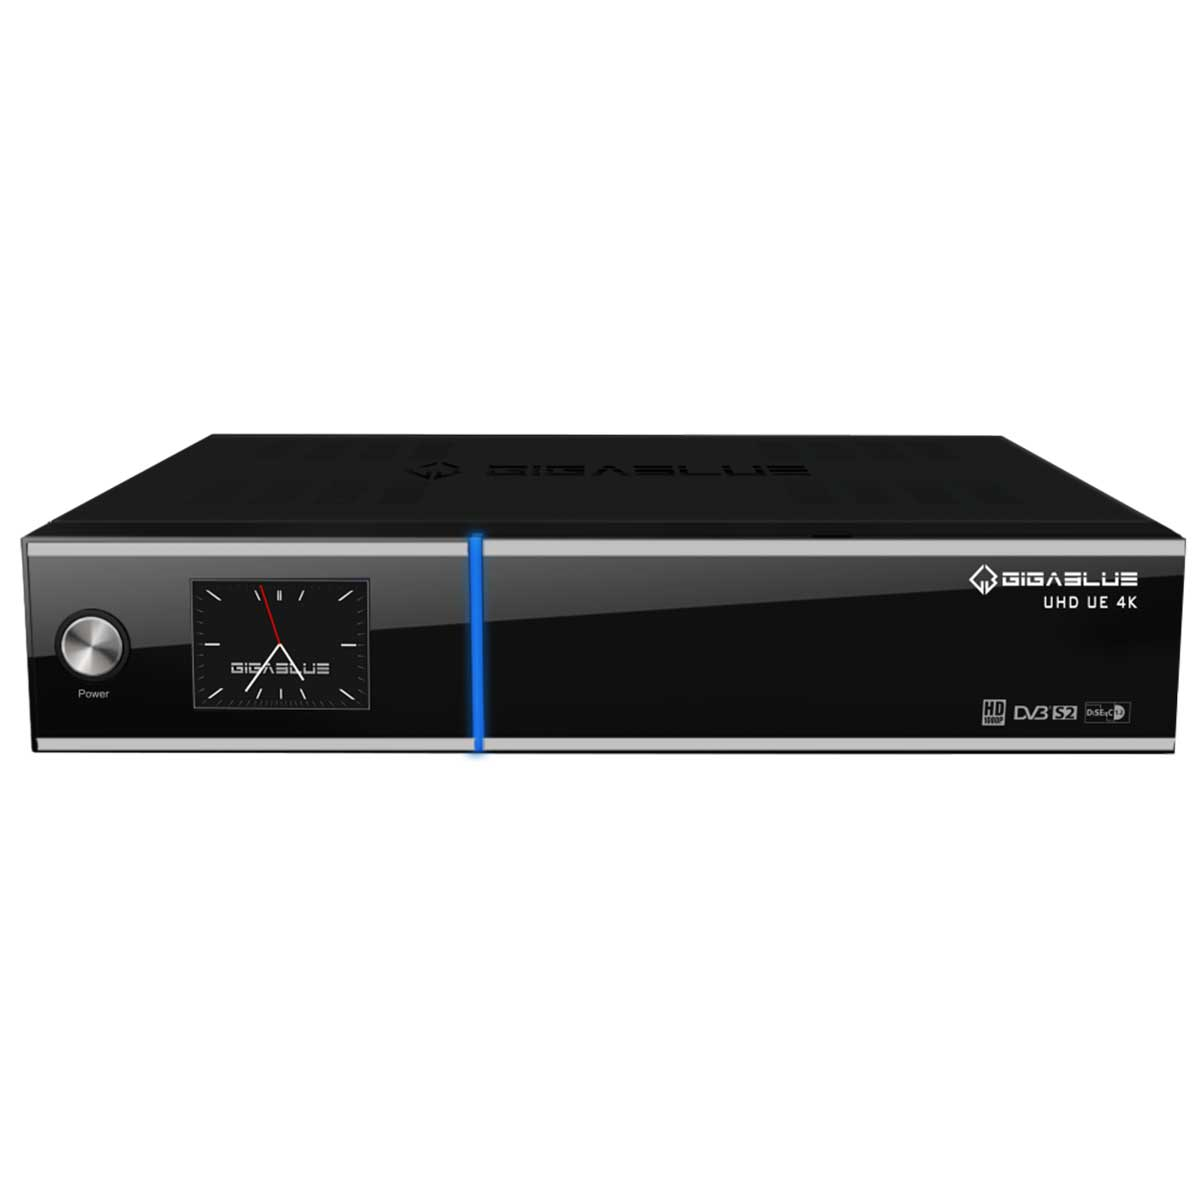 GIGABLUE Twin UE schwarz) Sat-Receiver DVB-S, Tuner, UHD DVB-S2, 4K PVR-Funktion=optional, (HDTV,